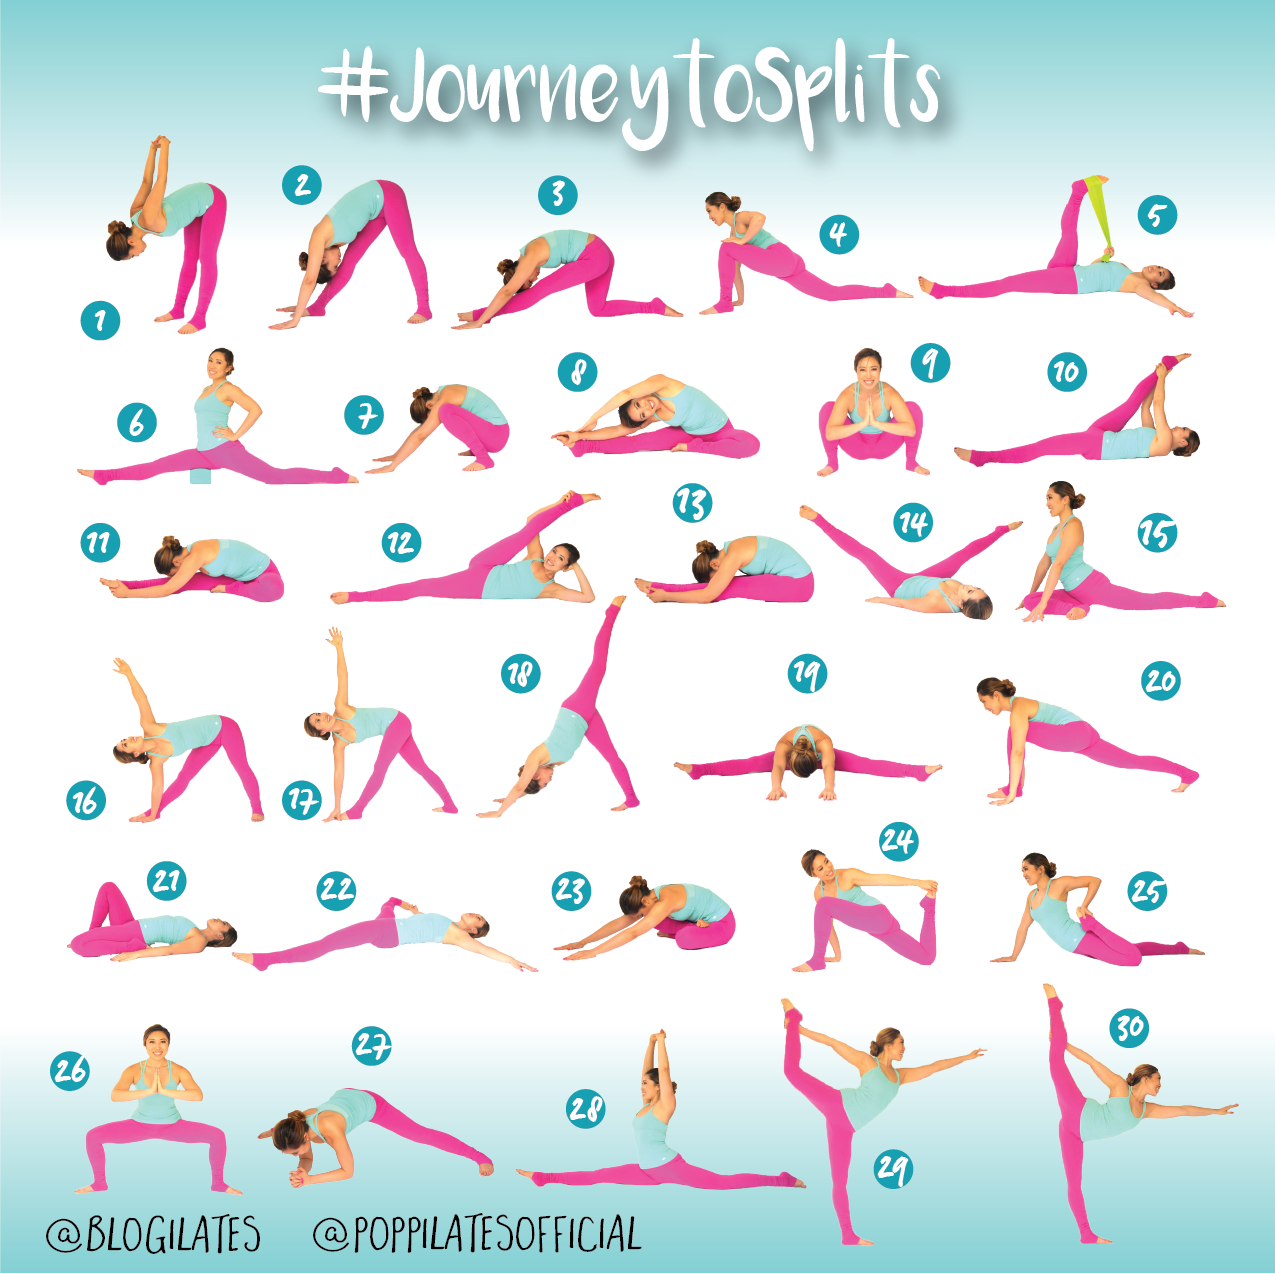 30-days-30-stretches-to-splits-journeytosplits